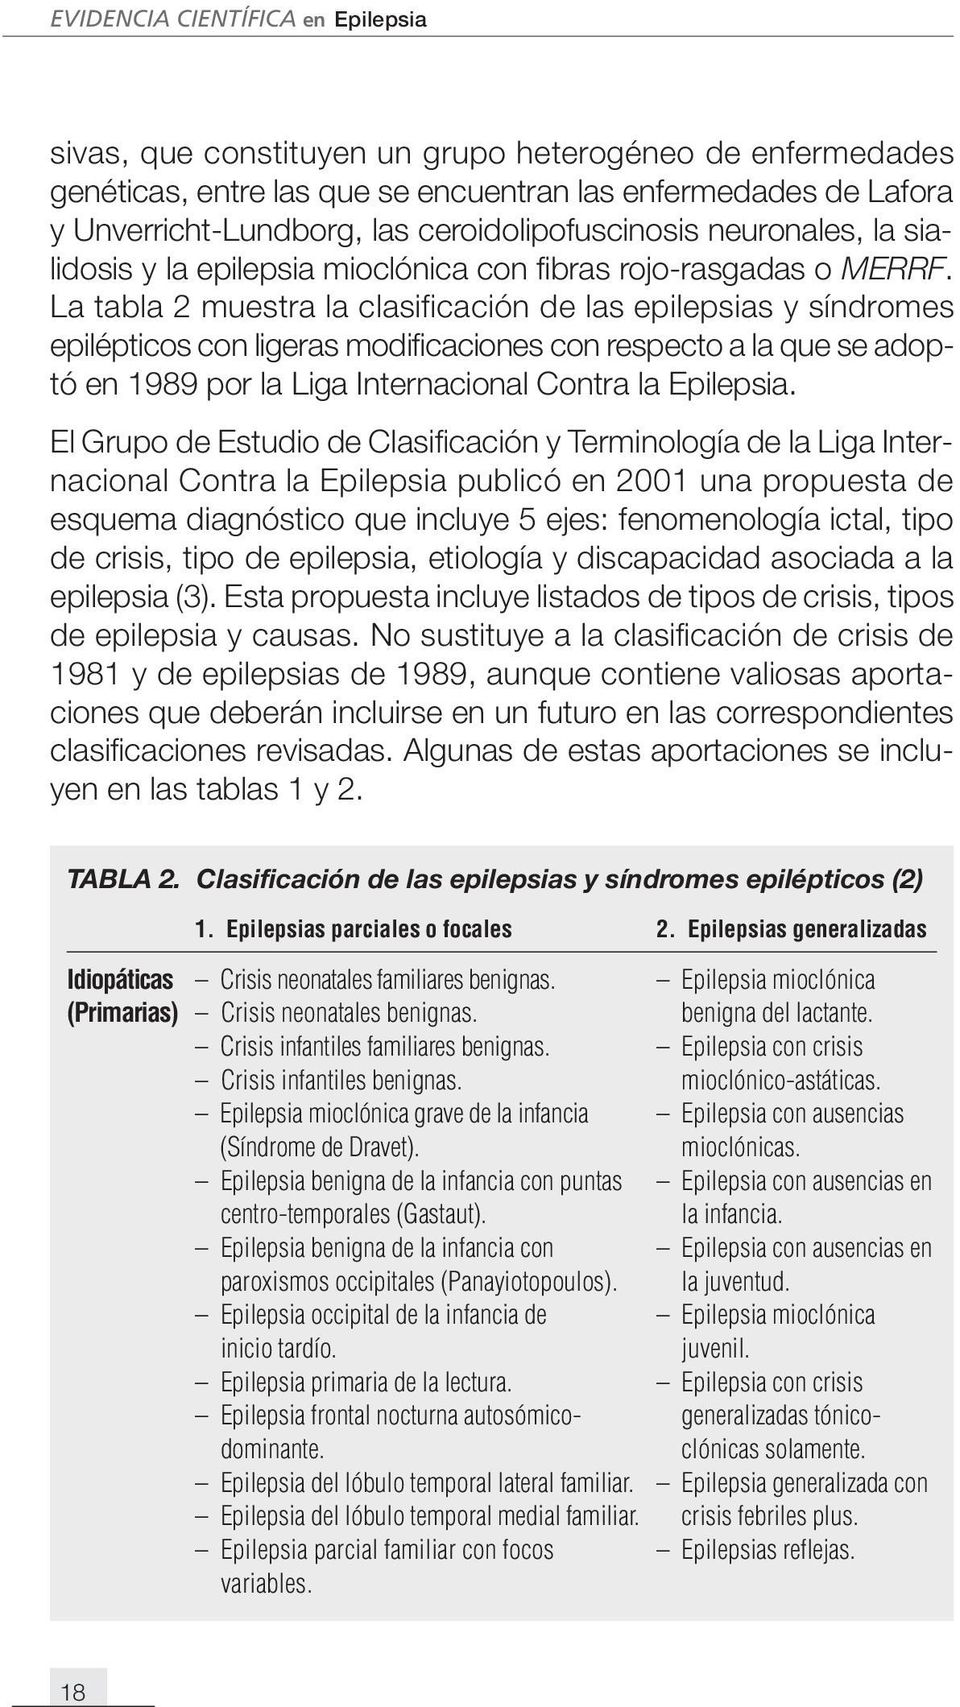 La tabla 2 muestra la clasificación de las epilepsias y síndromes epilépticos con ligeras modificaciones con respecto a la que se adoptó en 1989 por la Liga Internacional Contra la Epilepsia.